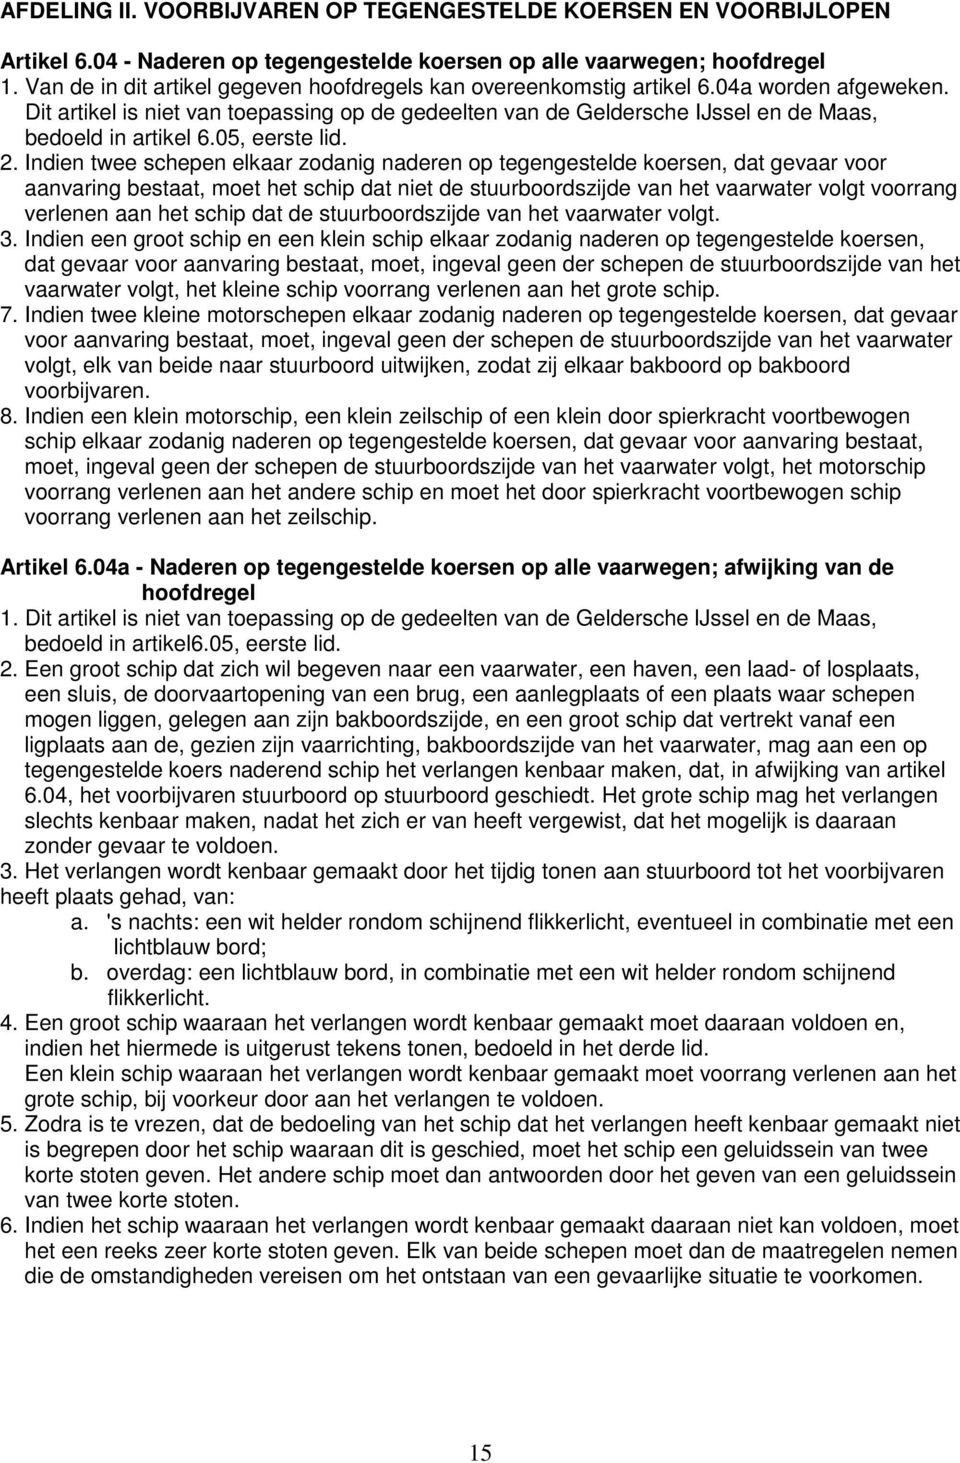 Dit artikel is niet van toepassing op de gedeelten van de Geldersche IJssel en de Maas, bedoeld in artikel 6.05, eerste lid. 2.